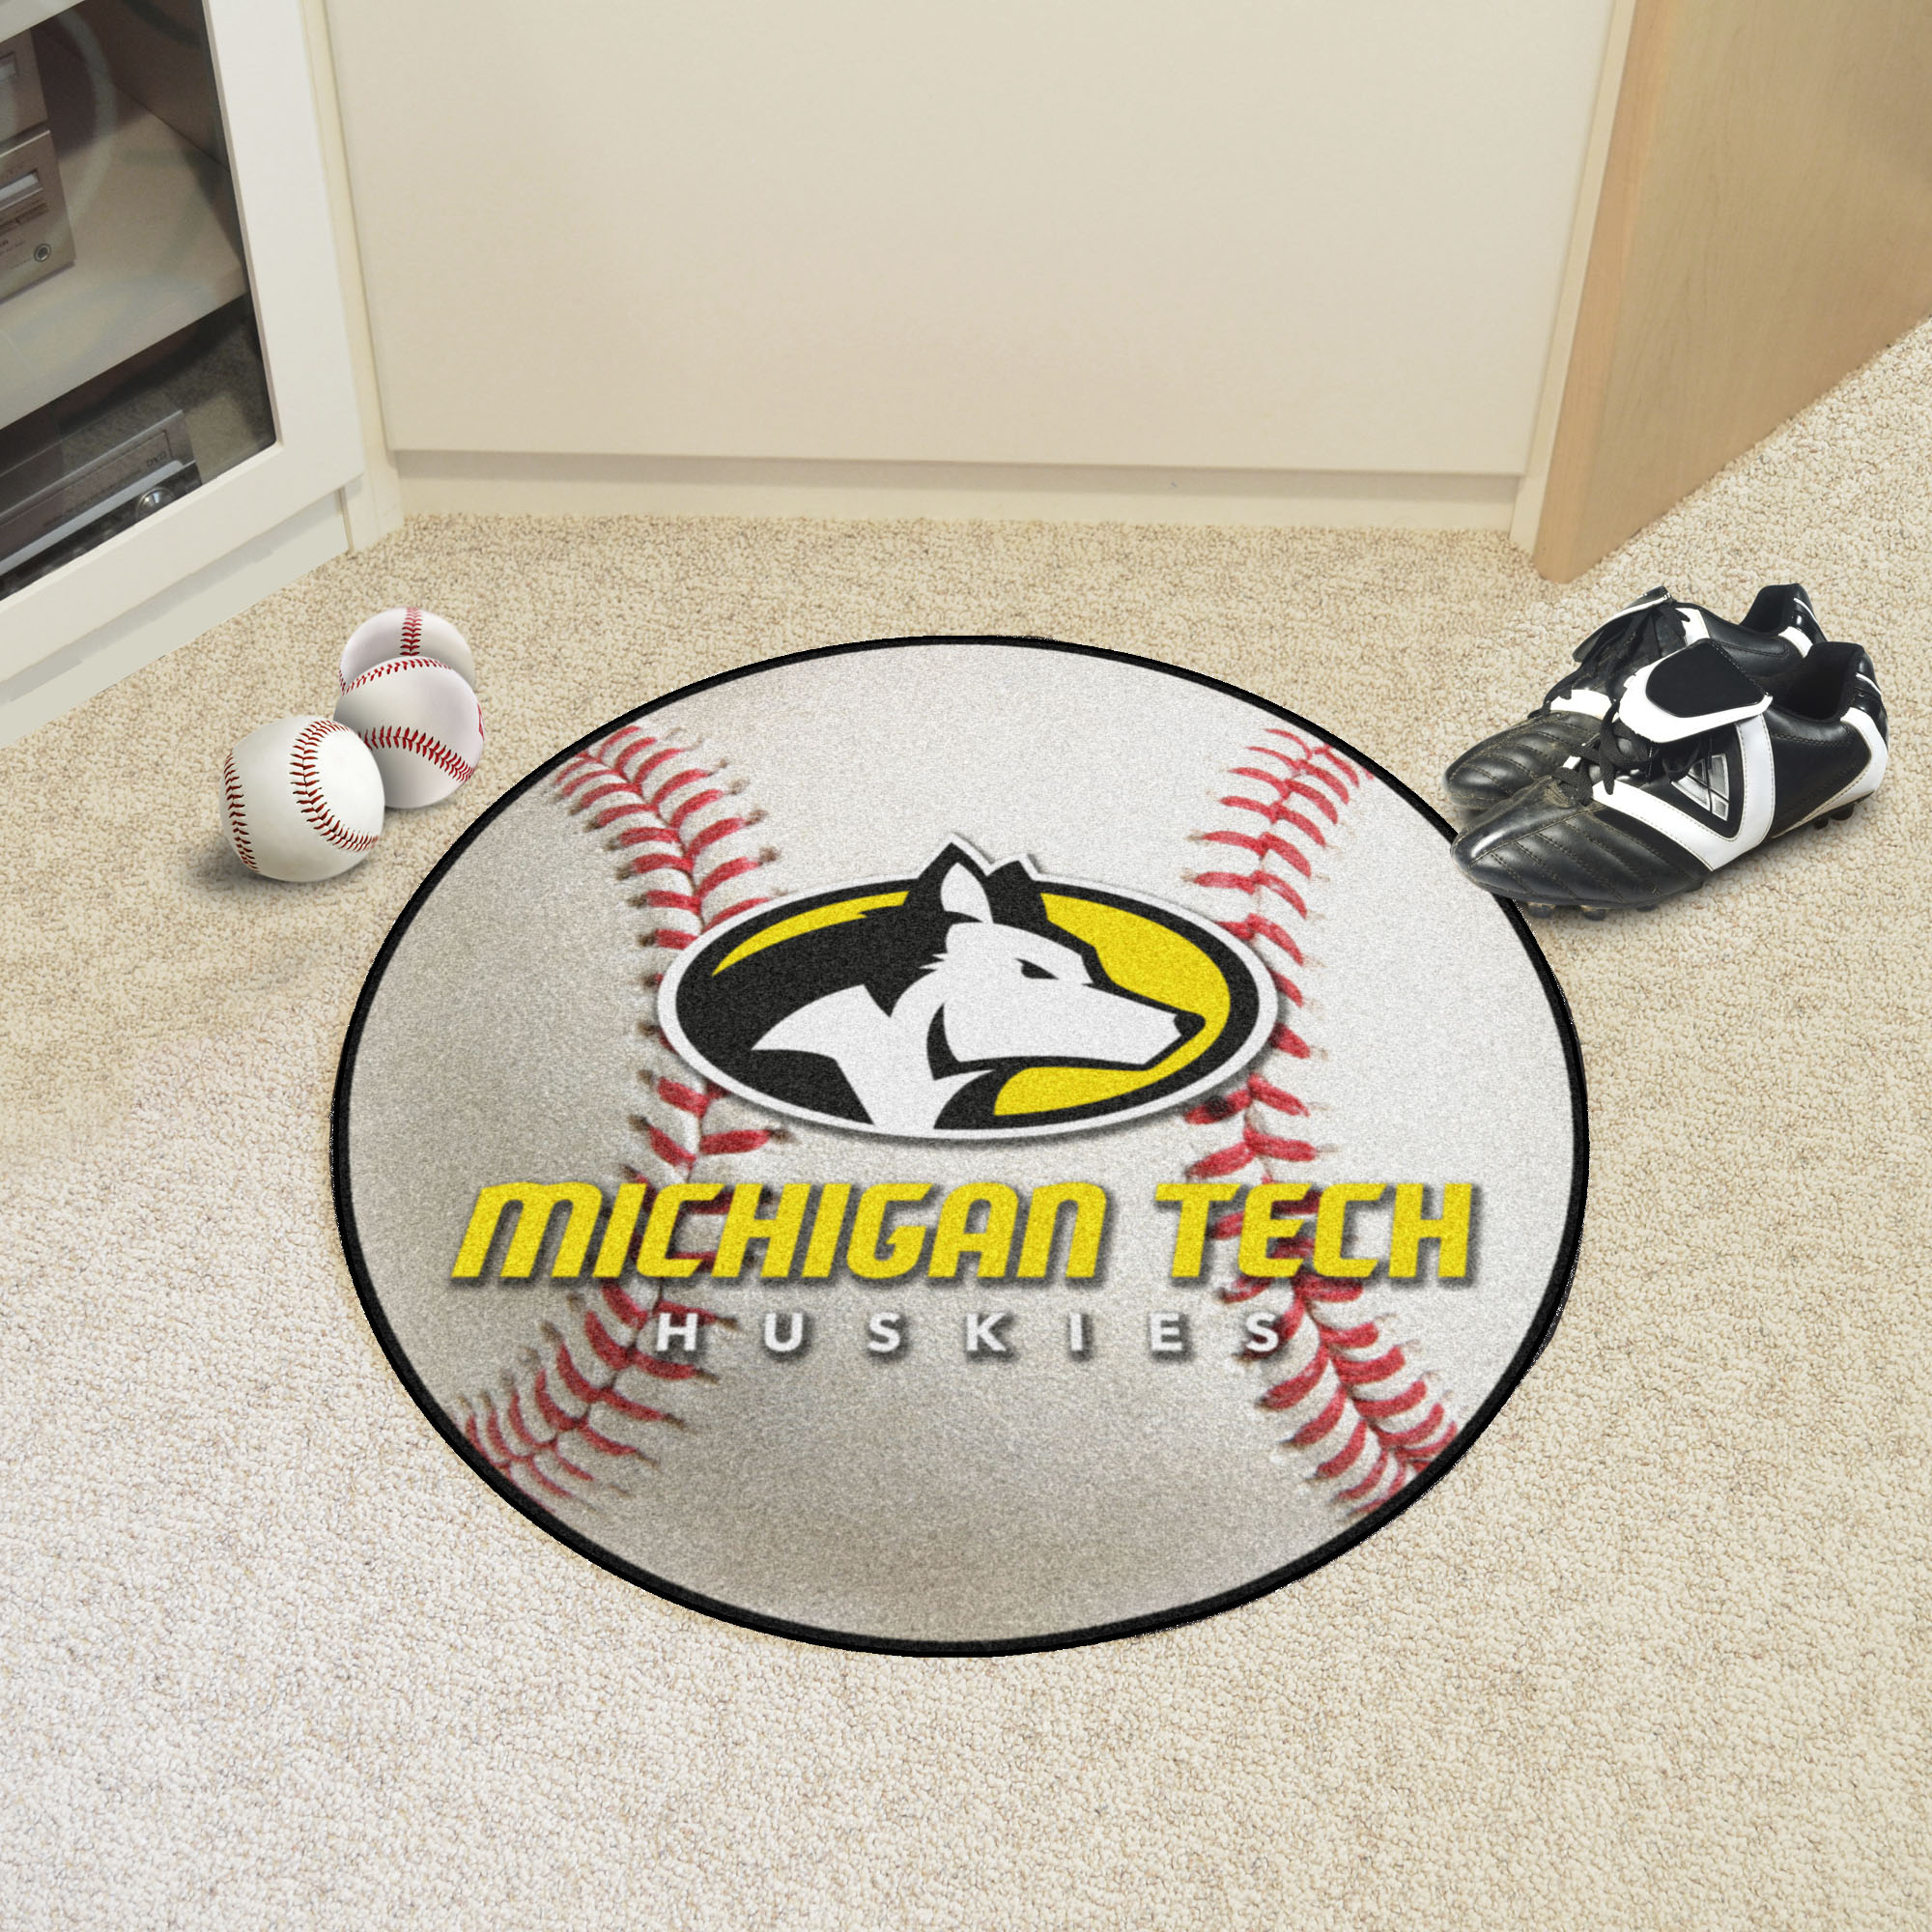 Michigan Technological University Ball Shaped Area rugs (Ball Shaped Area Rugs: Baseball)